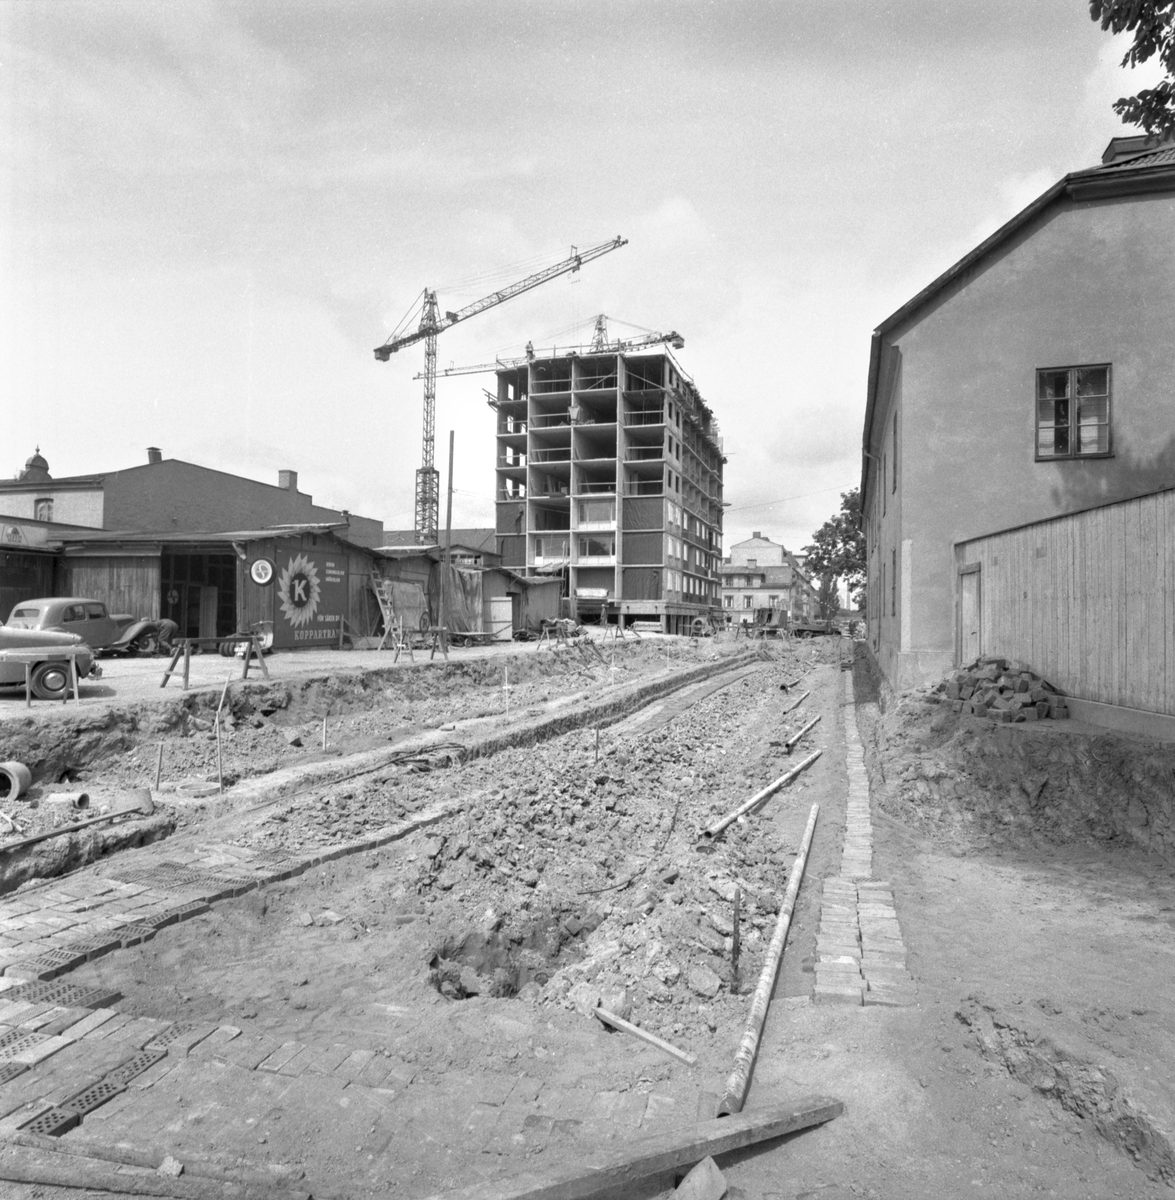 Saneringen av kvarteret Druvan var en av de större som genomförts i Linköping, där all äldre bebyggelse revs under kort tid. Av det nya kom övervägande delen inrymma affärs- och kontorsytor. I hörnet Storgatan-Hamngatan uppfördes dock ett bostadskomplex med sju våningar över affärsplan.